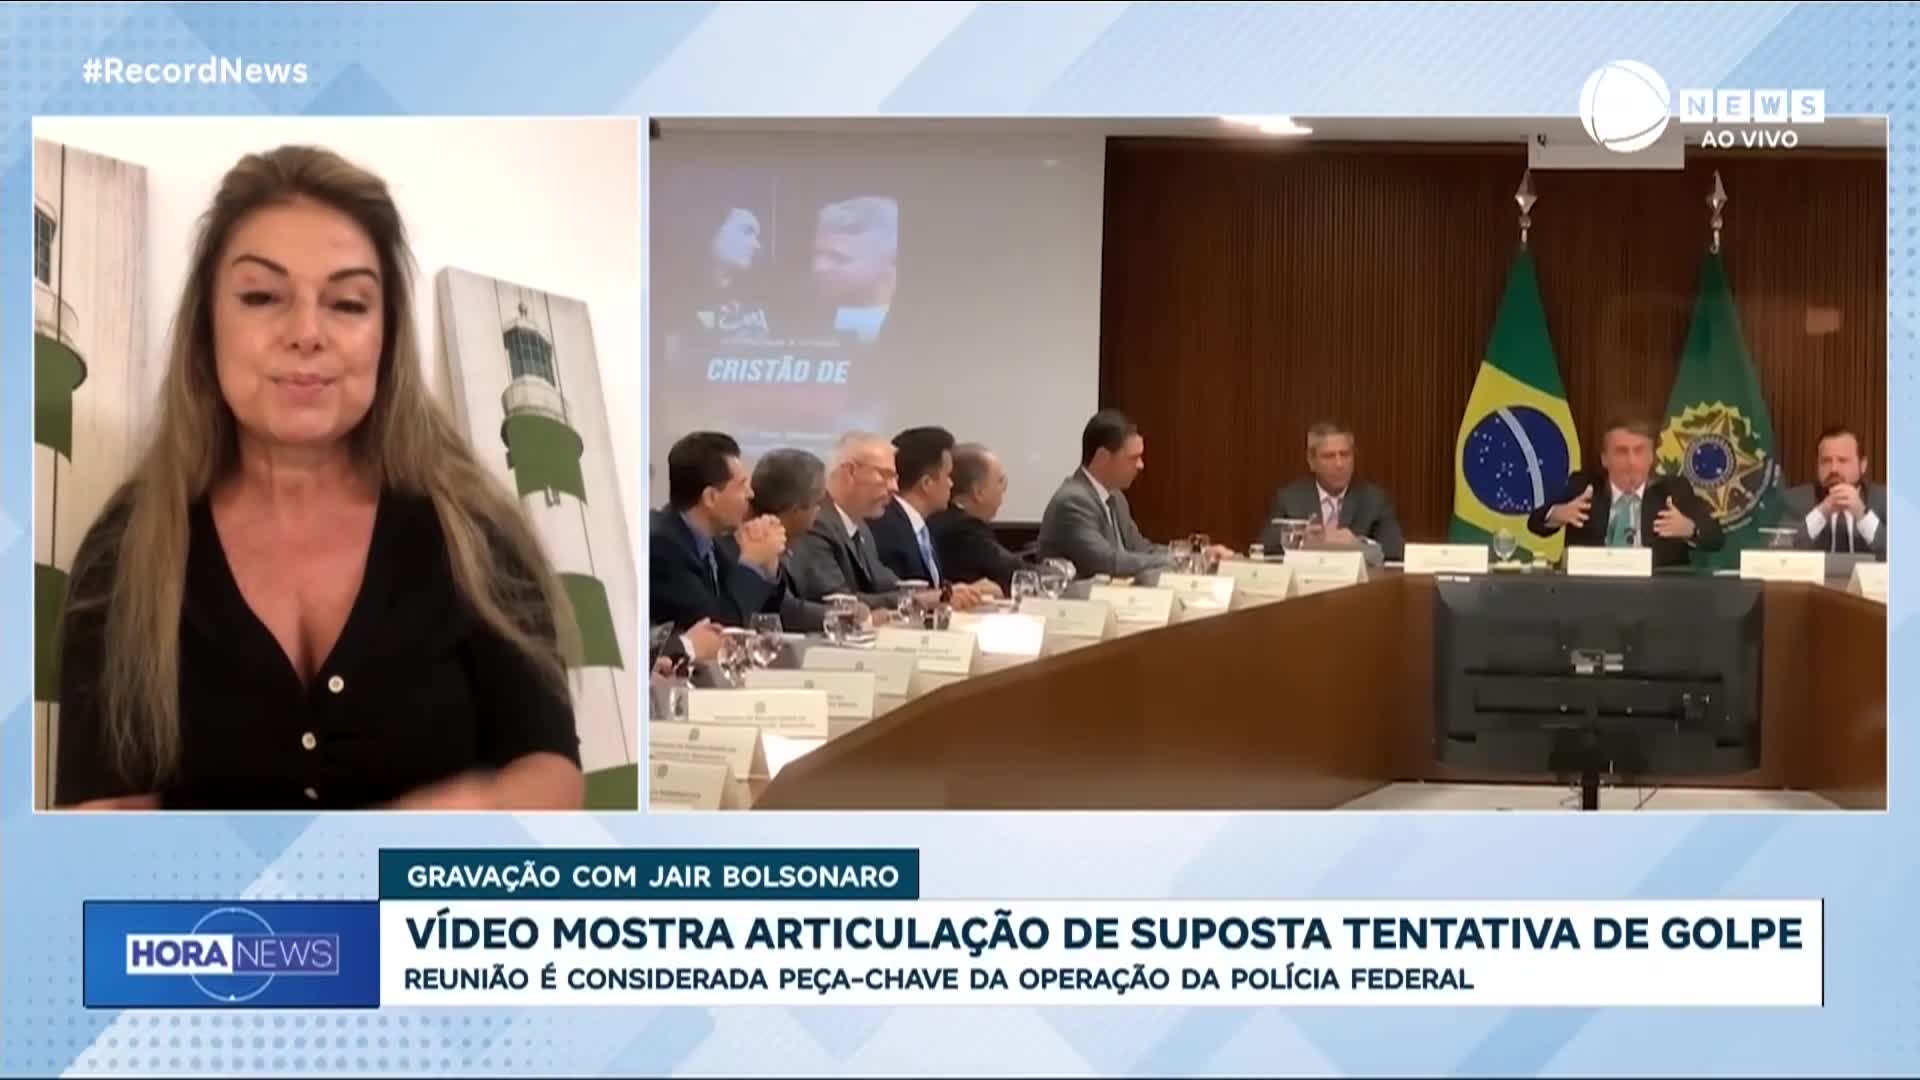 Vídeo: 'O que poderia ser usado contra ele, provavelmente já foi destruído', diz advogada sobre possível prisão de Bolsonaro